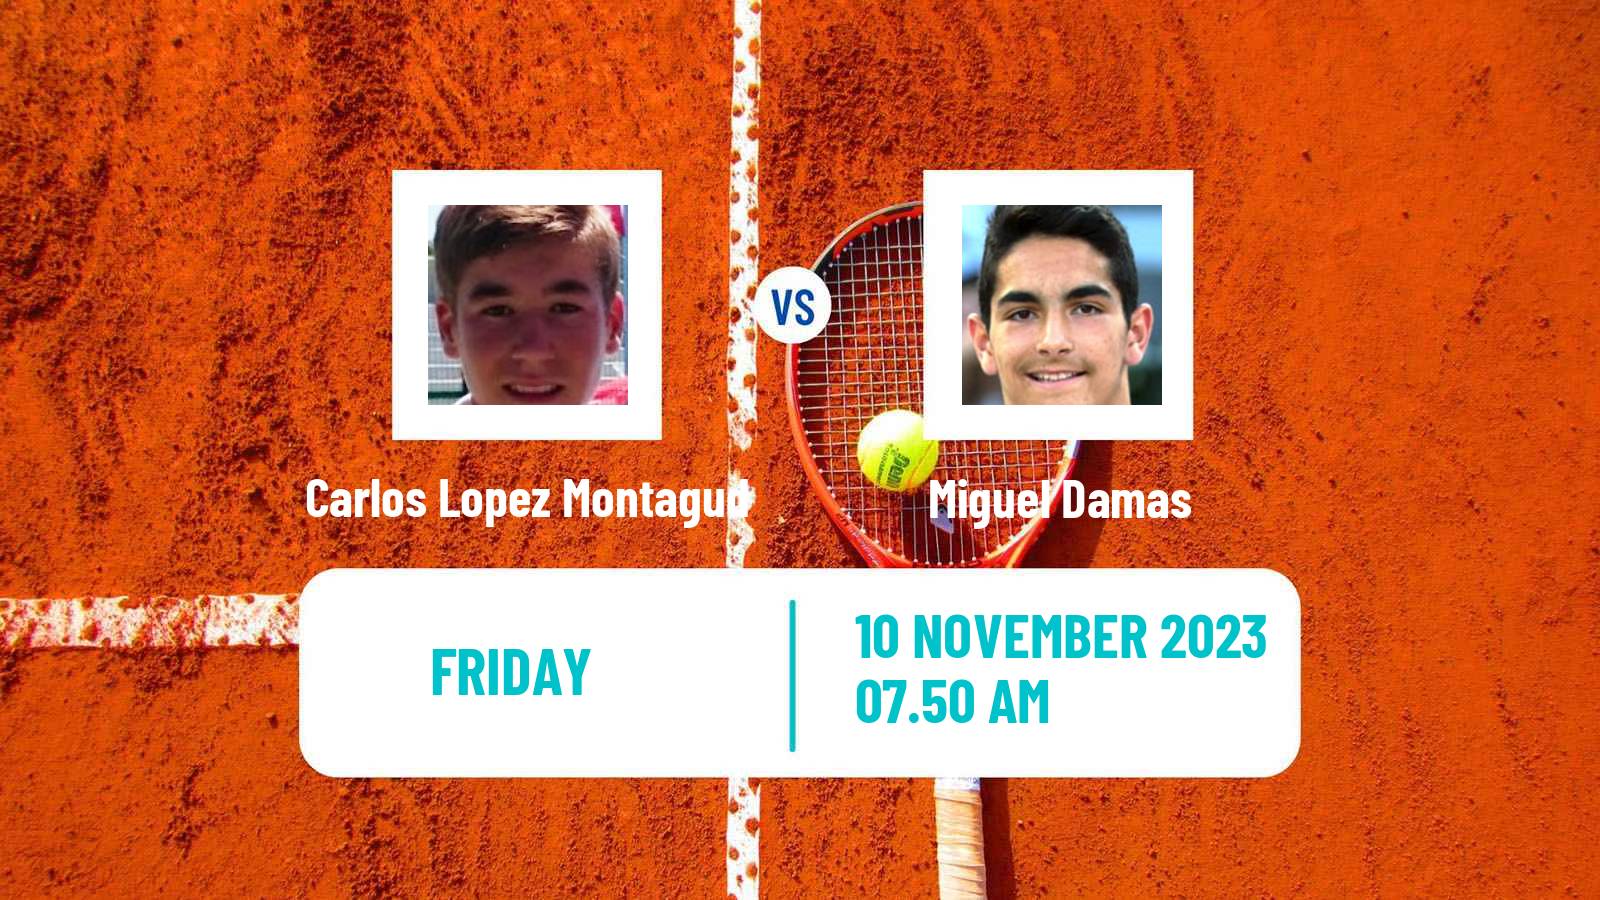 Tennis ITF M25 Benicarlo Men Carlos Lopez Montagud - Miguel Damas